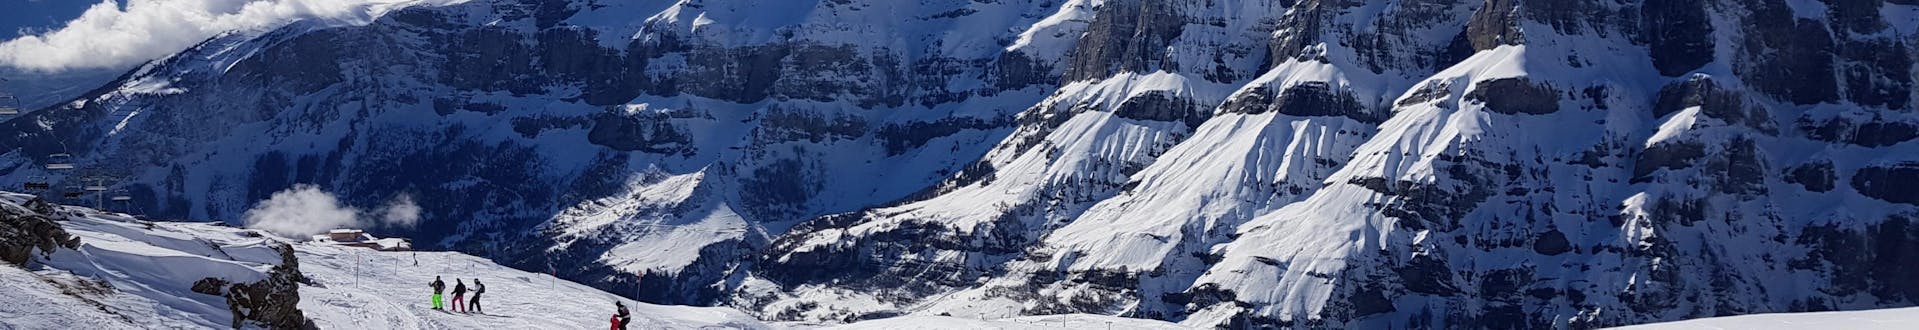 Blick auf das Schweizer Skigebiet Leukerbad-Torrent, wo die örtlichen Skischulen ihre Skikurse anbieten.